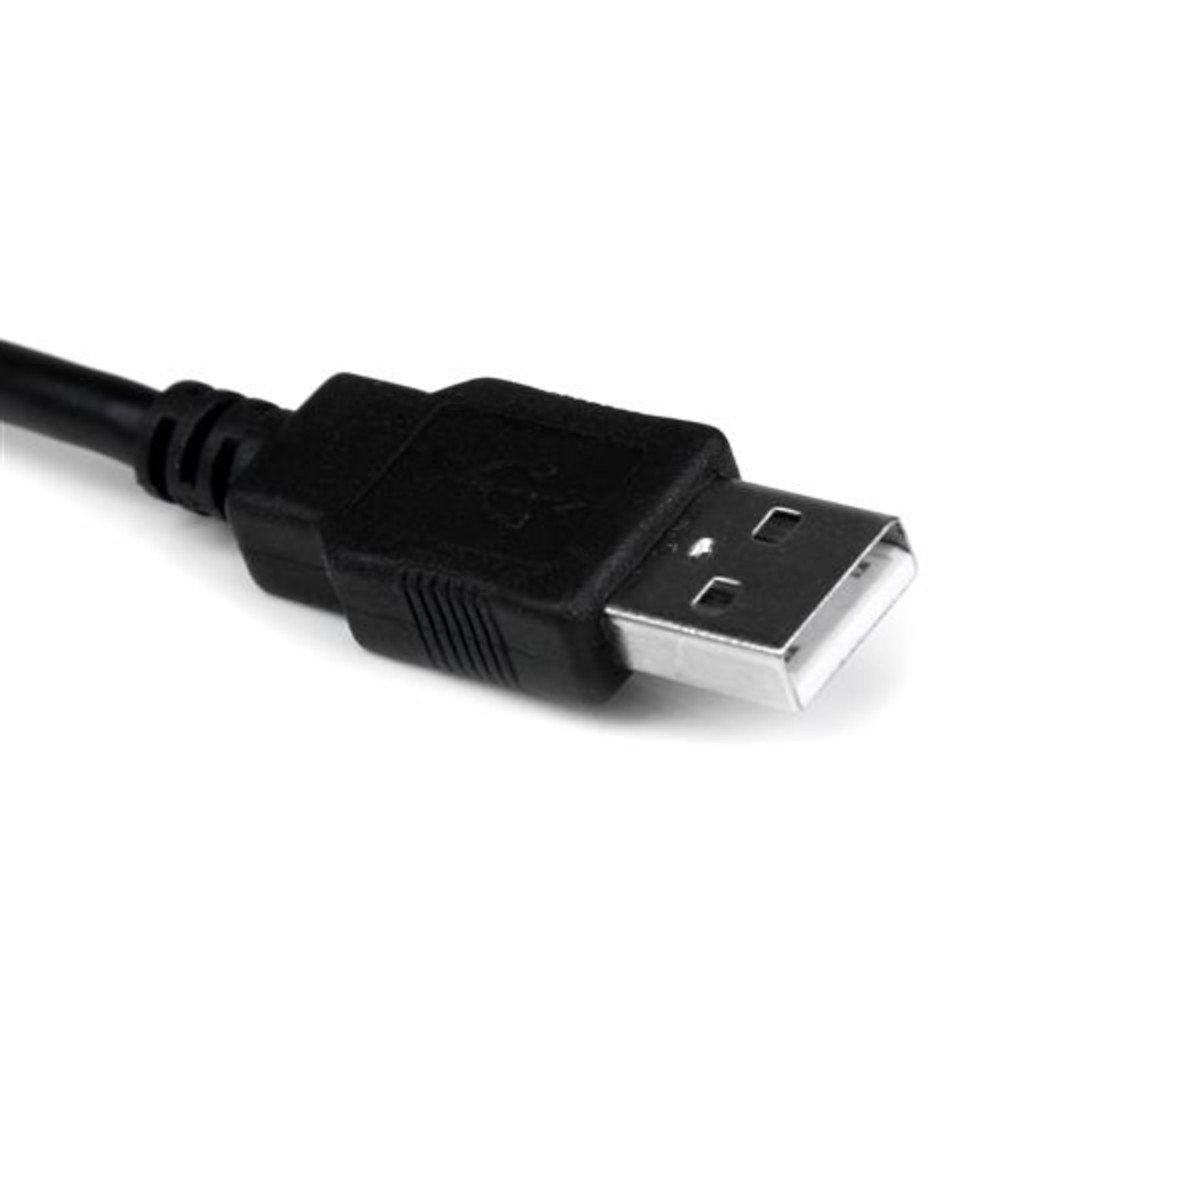 1Port Professional USB-Serial Adpt Cable